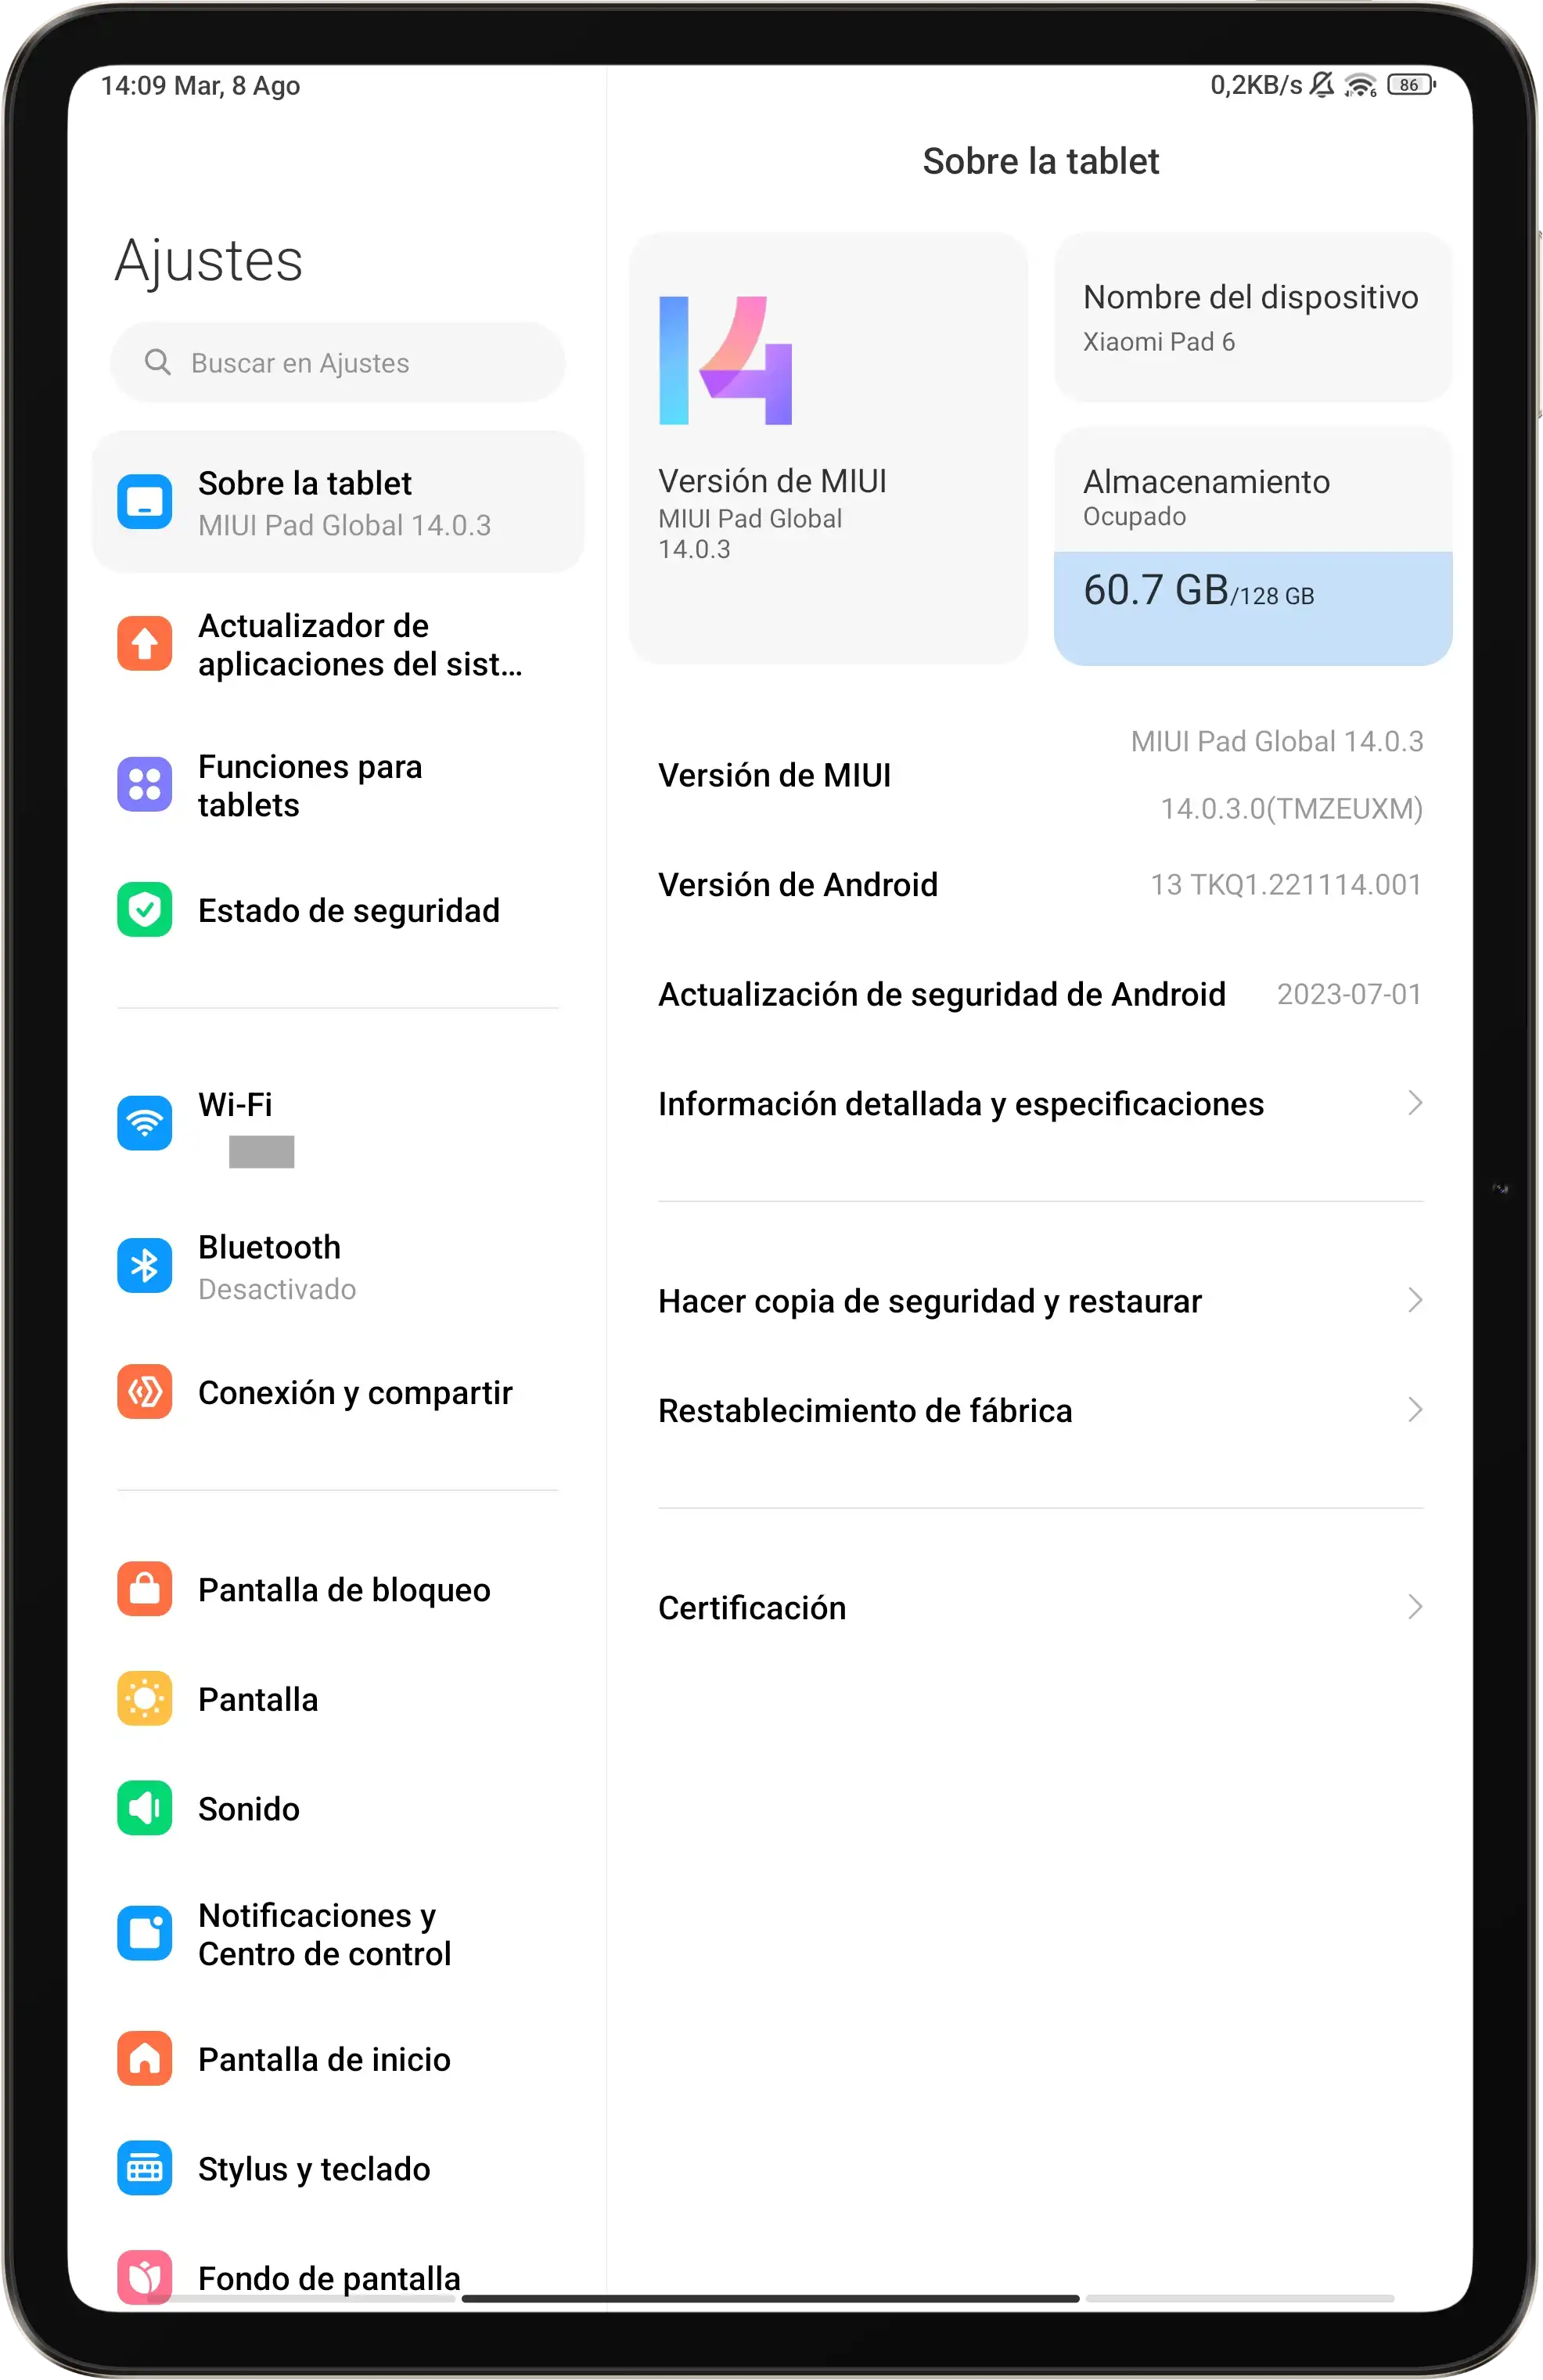 Aparecen nuevos datos del tablet Xiaomi Pad 6, que se vaya preparando Apple, Tablets